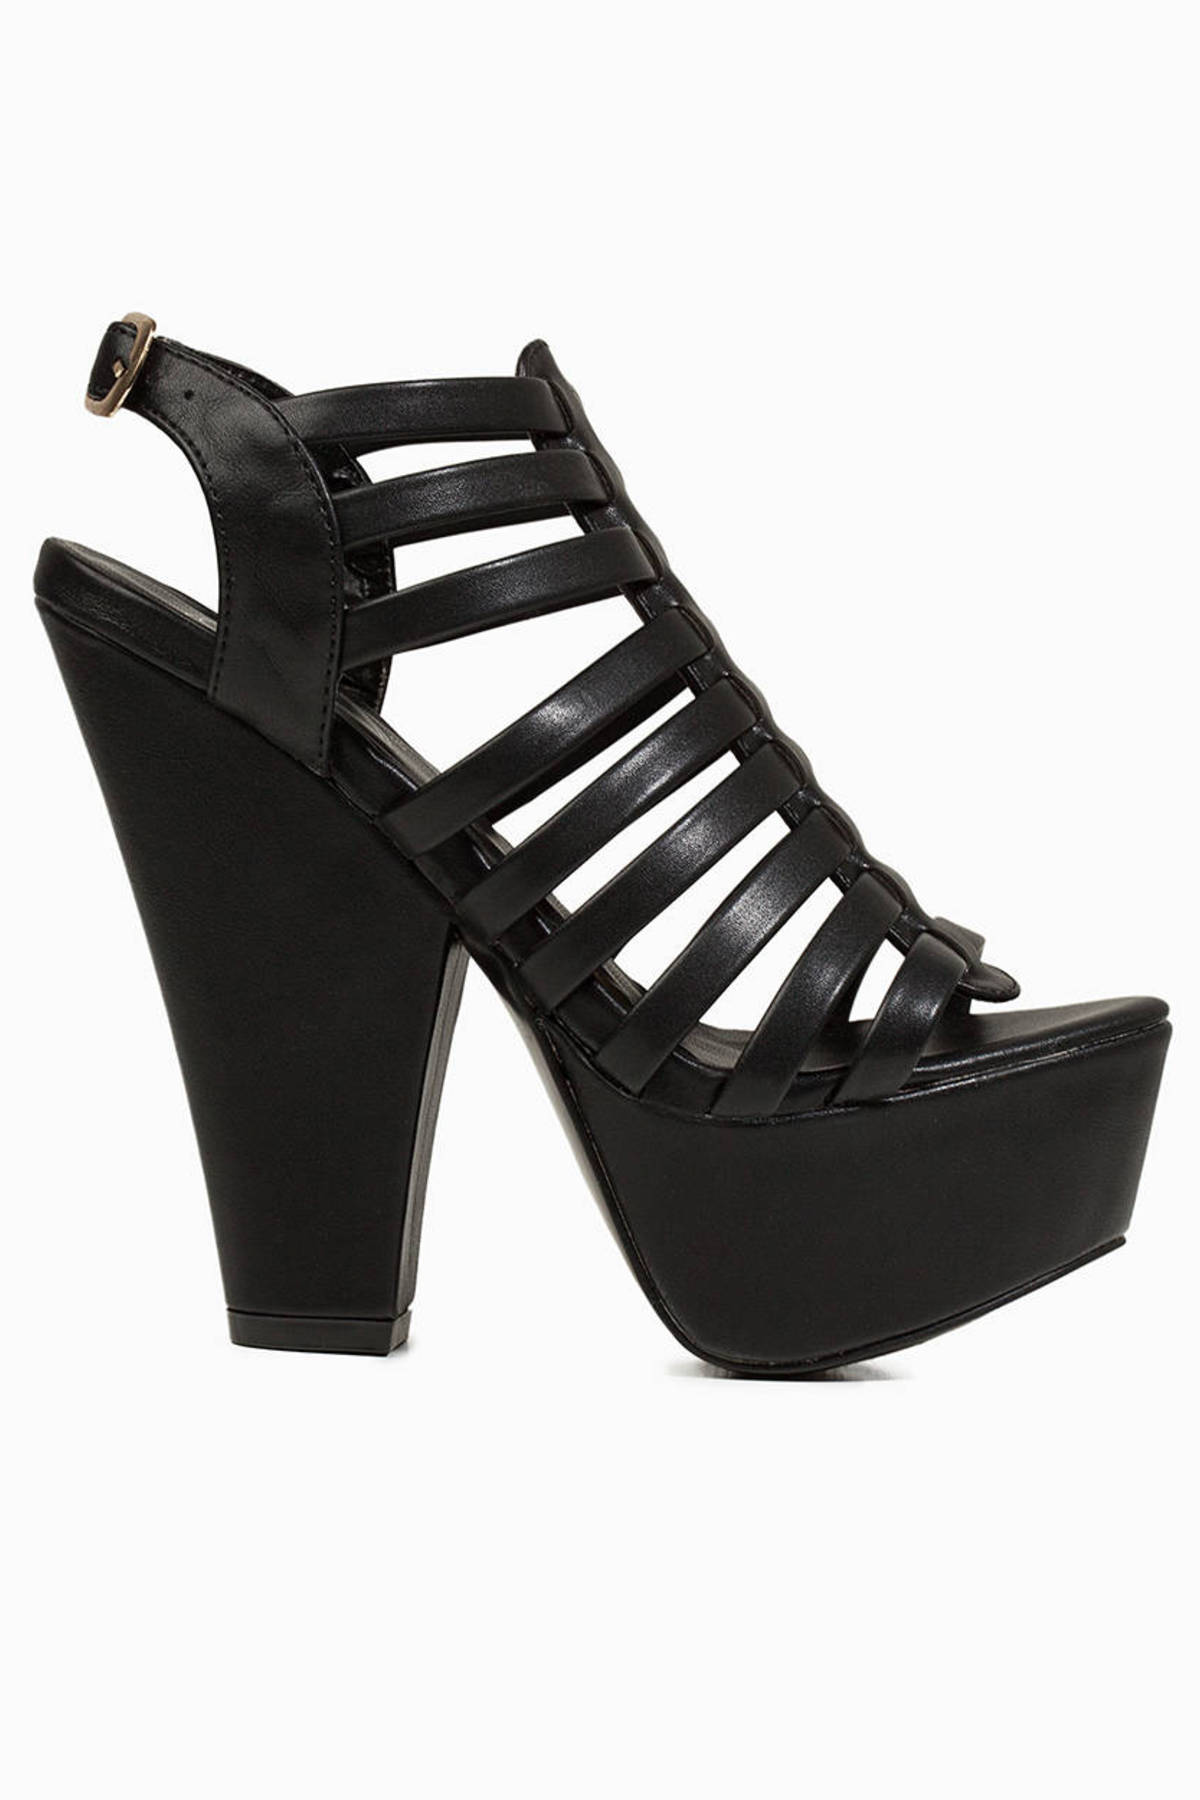 Josselyn Heels in Black - $74 | Tobi US